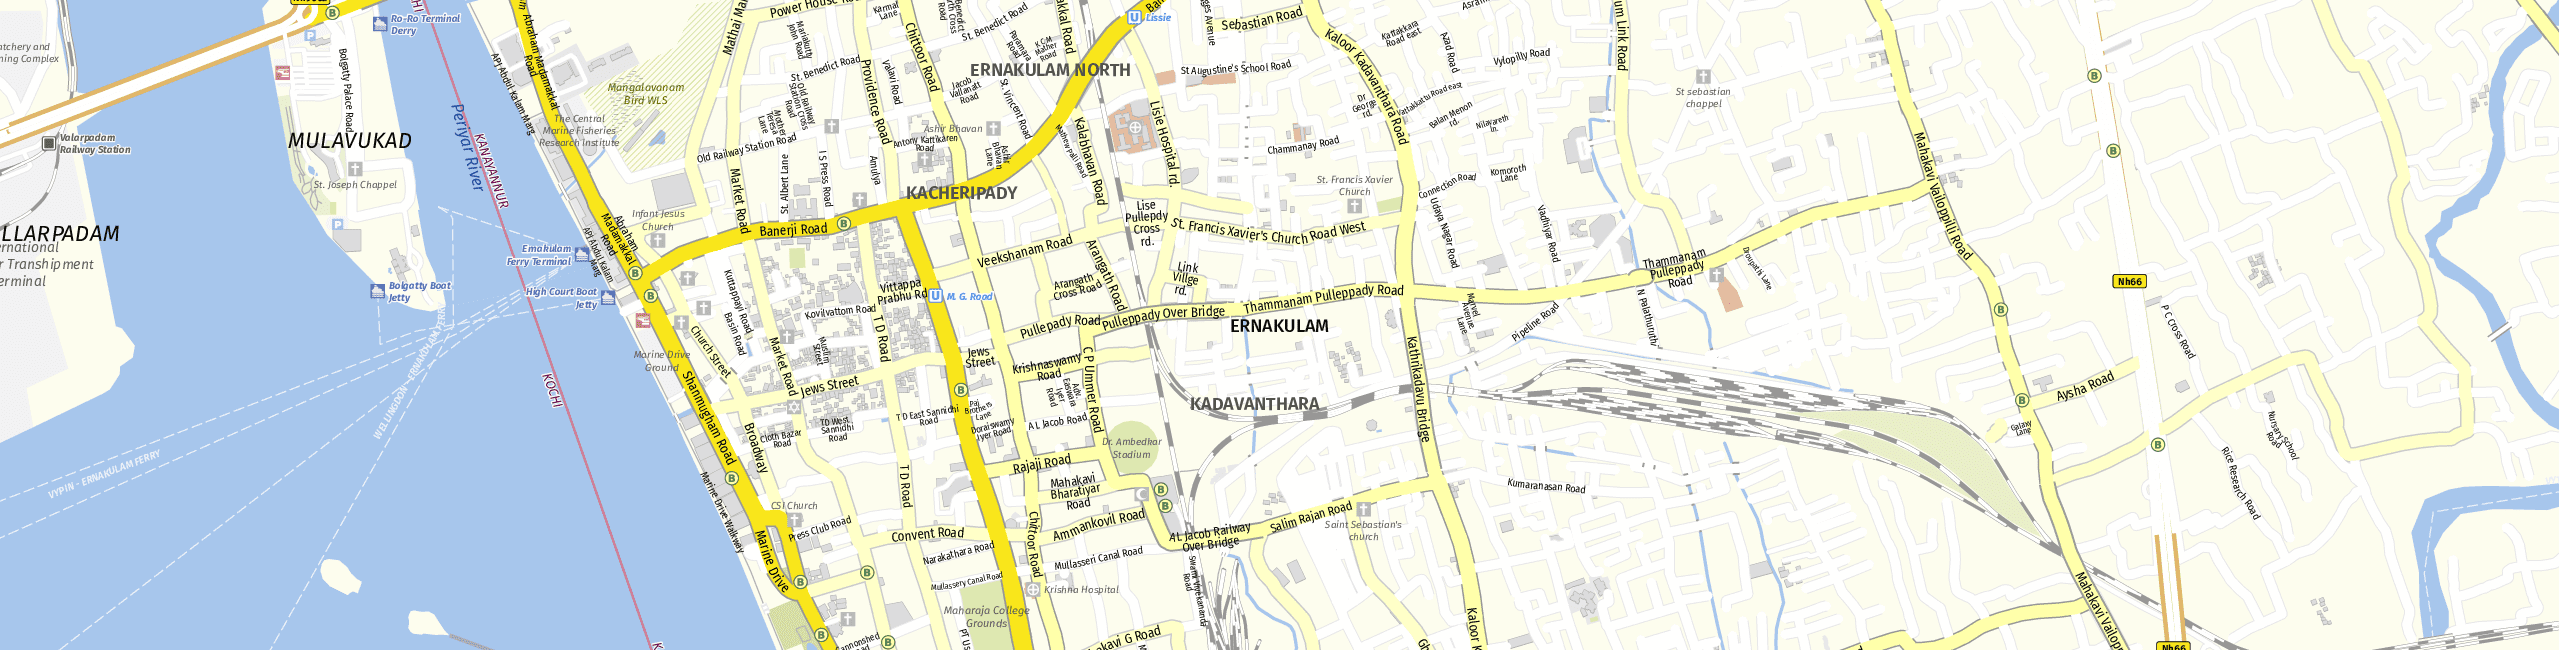 Stadtplan Ernakulam zum Downloaden.